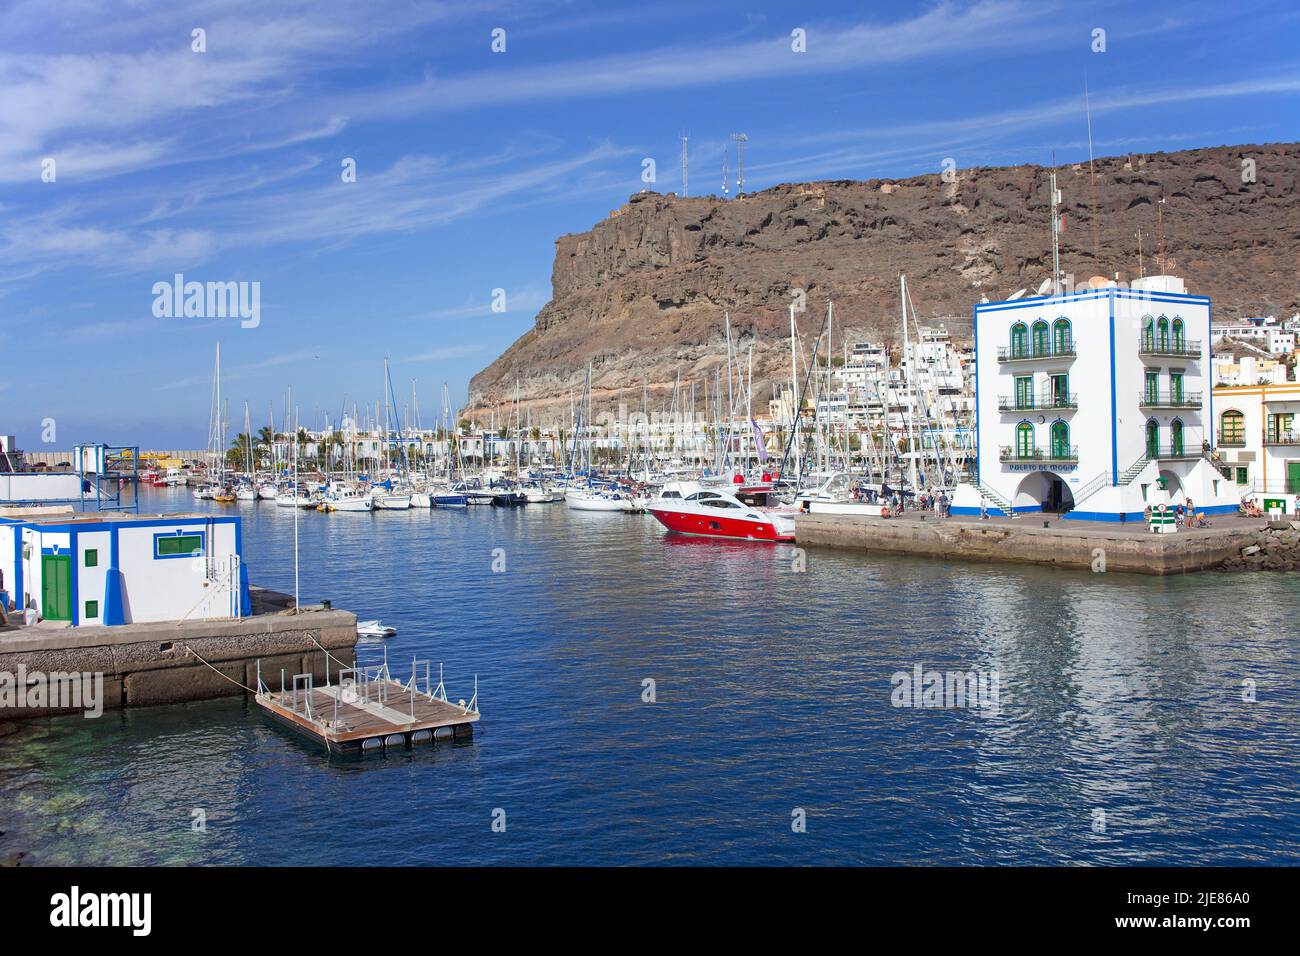 Entrée dans le port de Puerto de Mogan, Grand Canary, îles Canaries, Espagne, Europe Banque D'Images